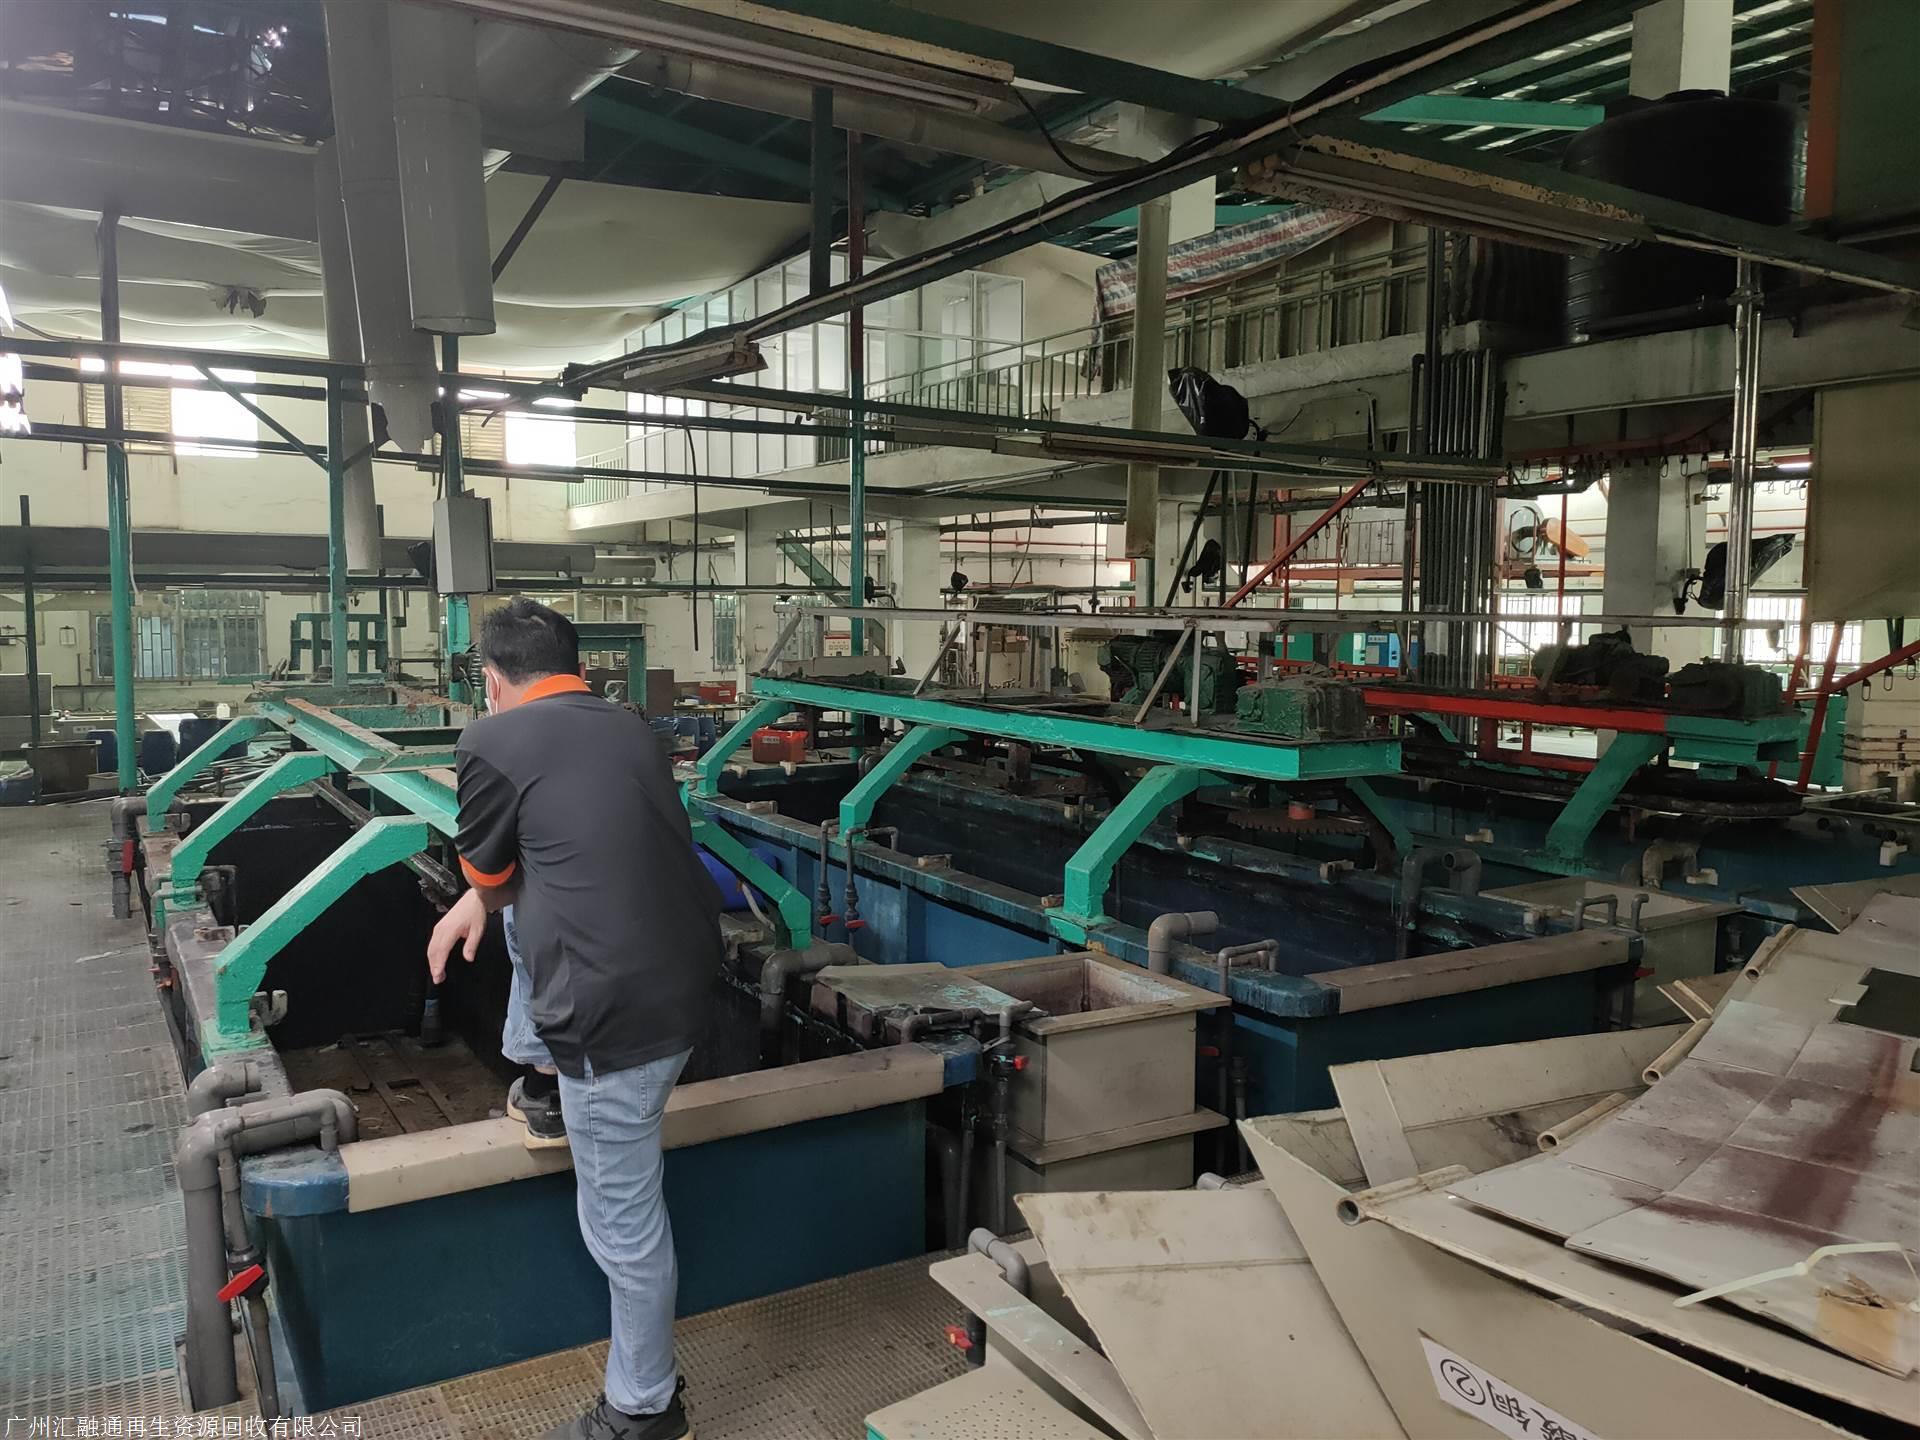 肇庆端州区化工厂设备回收,承接拆除回收整厂设备,化工设备回收